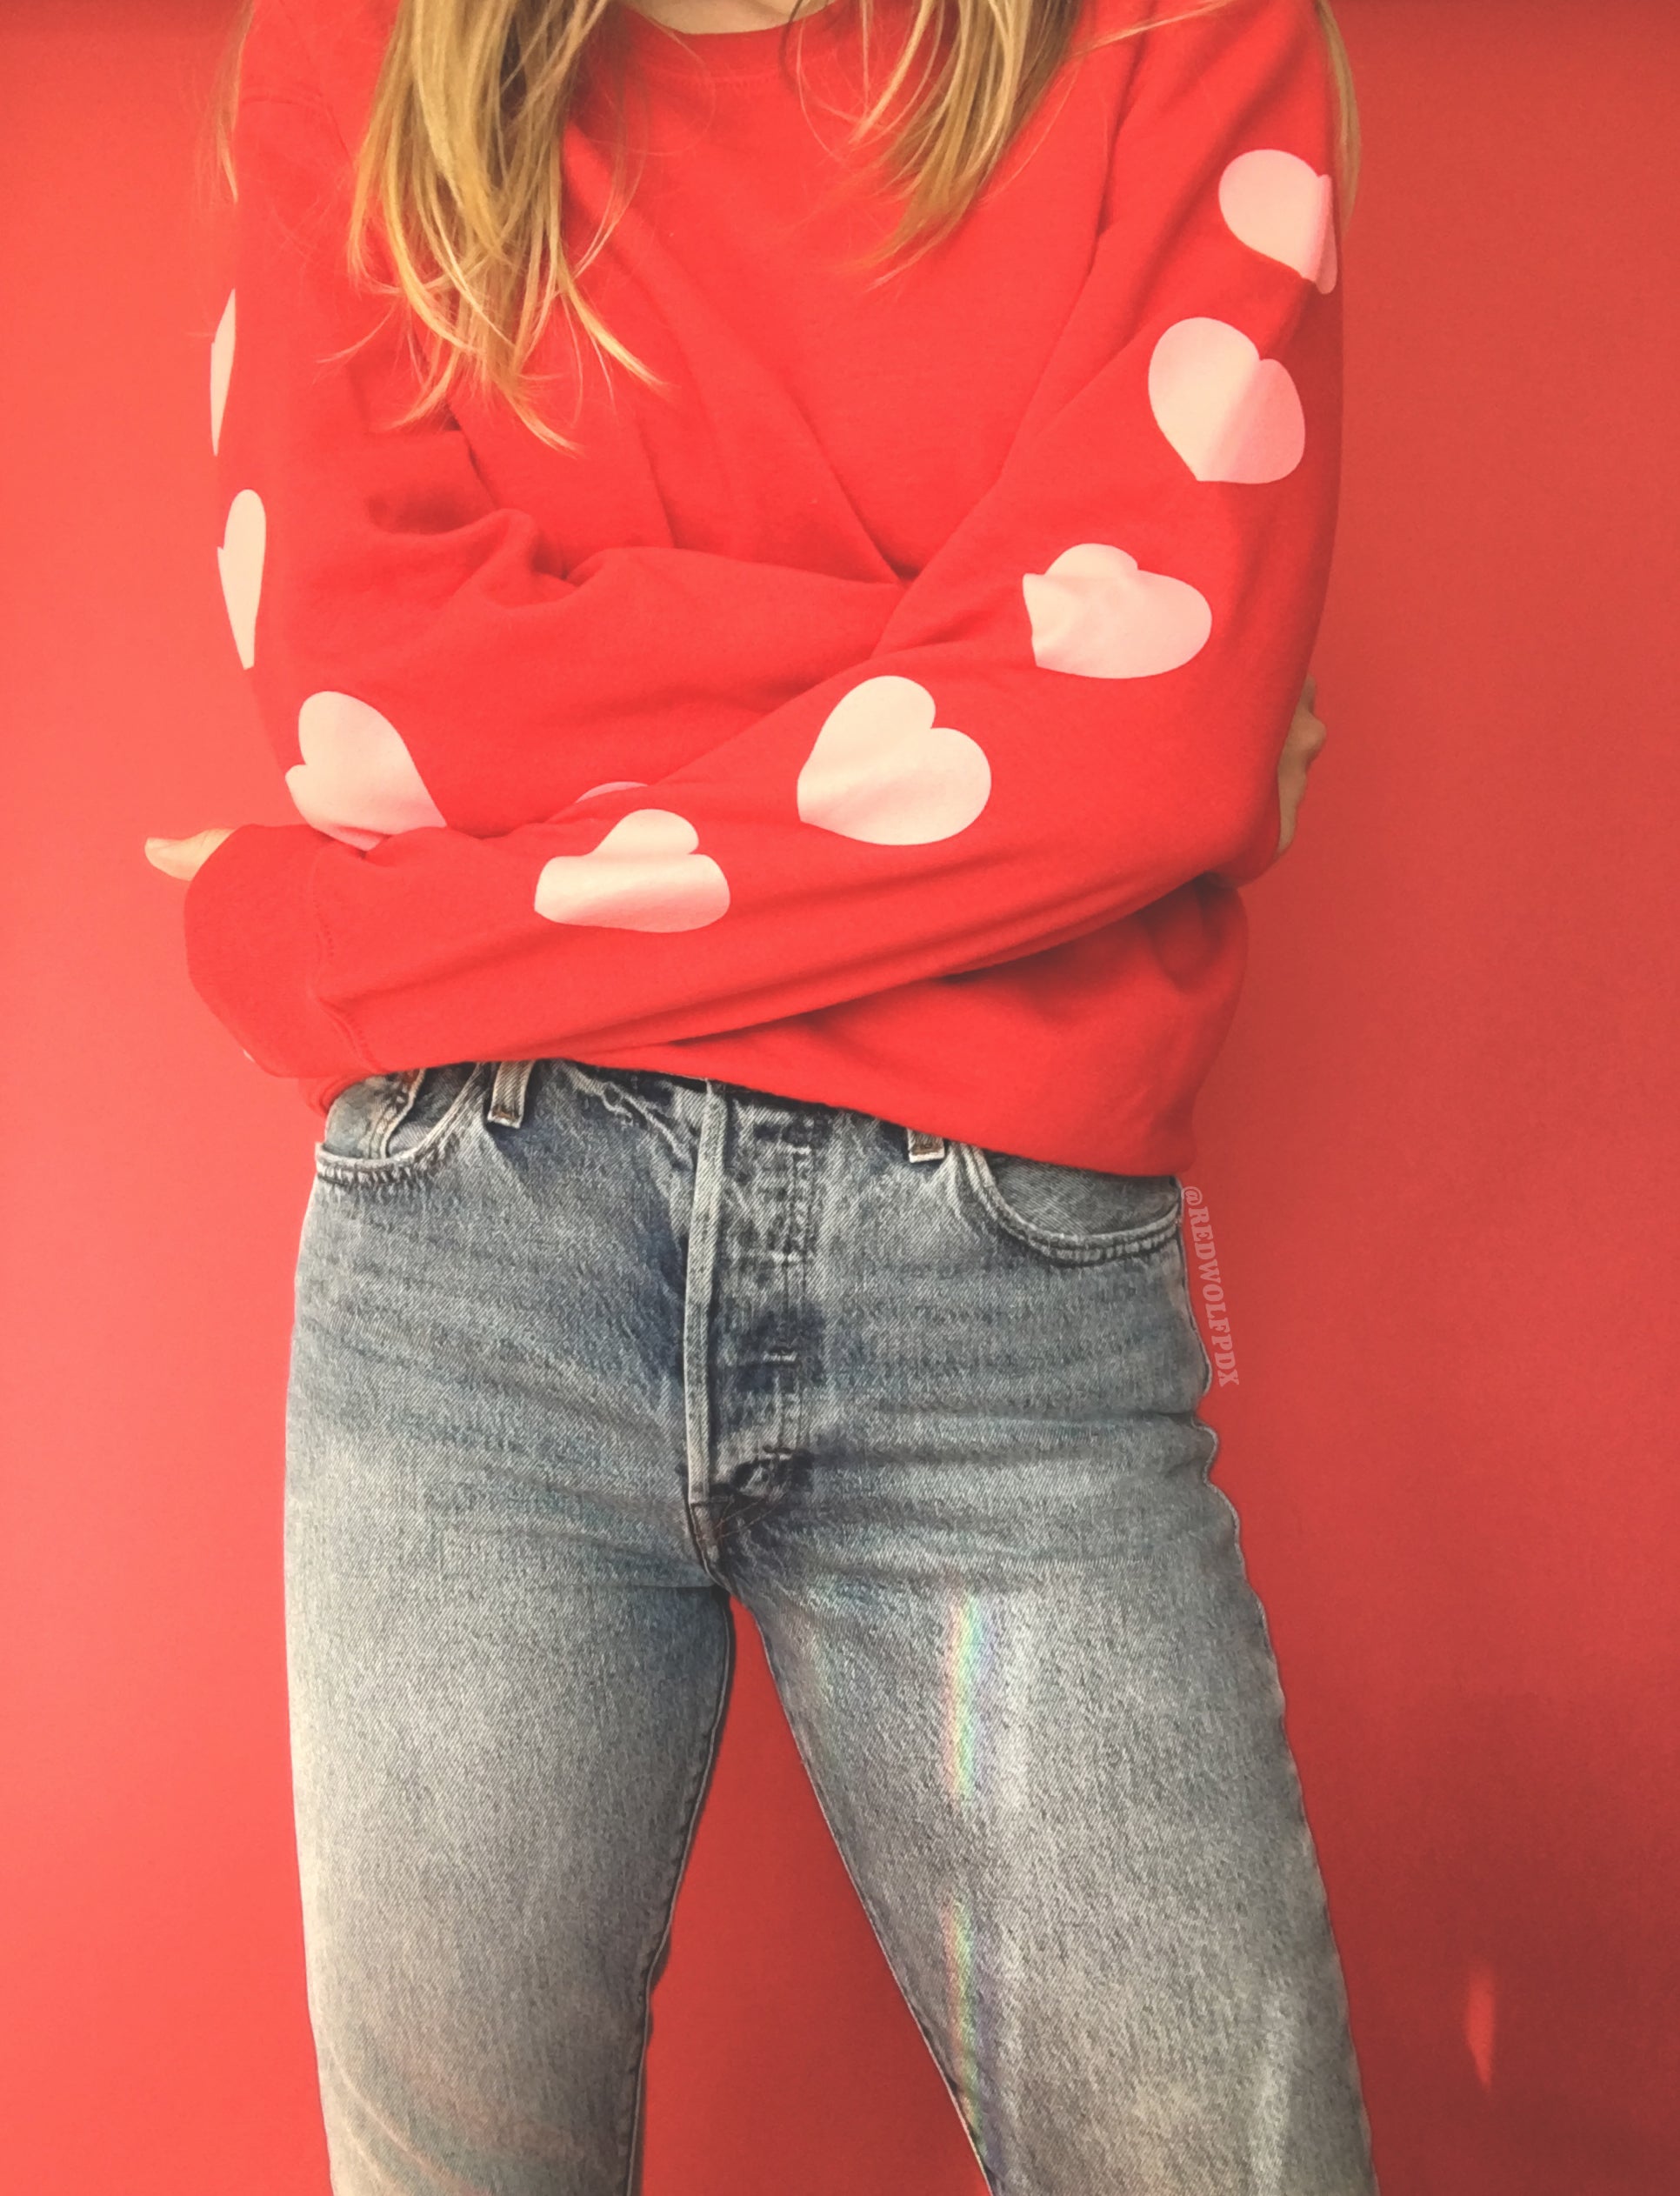  sweatshirt - Heart Sleeve Sweatshirt - REDWOLF